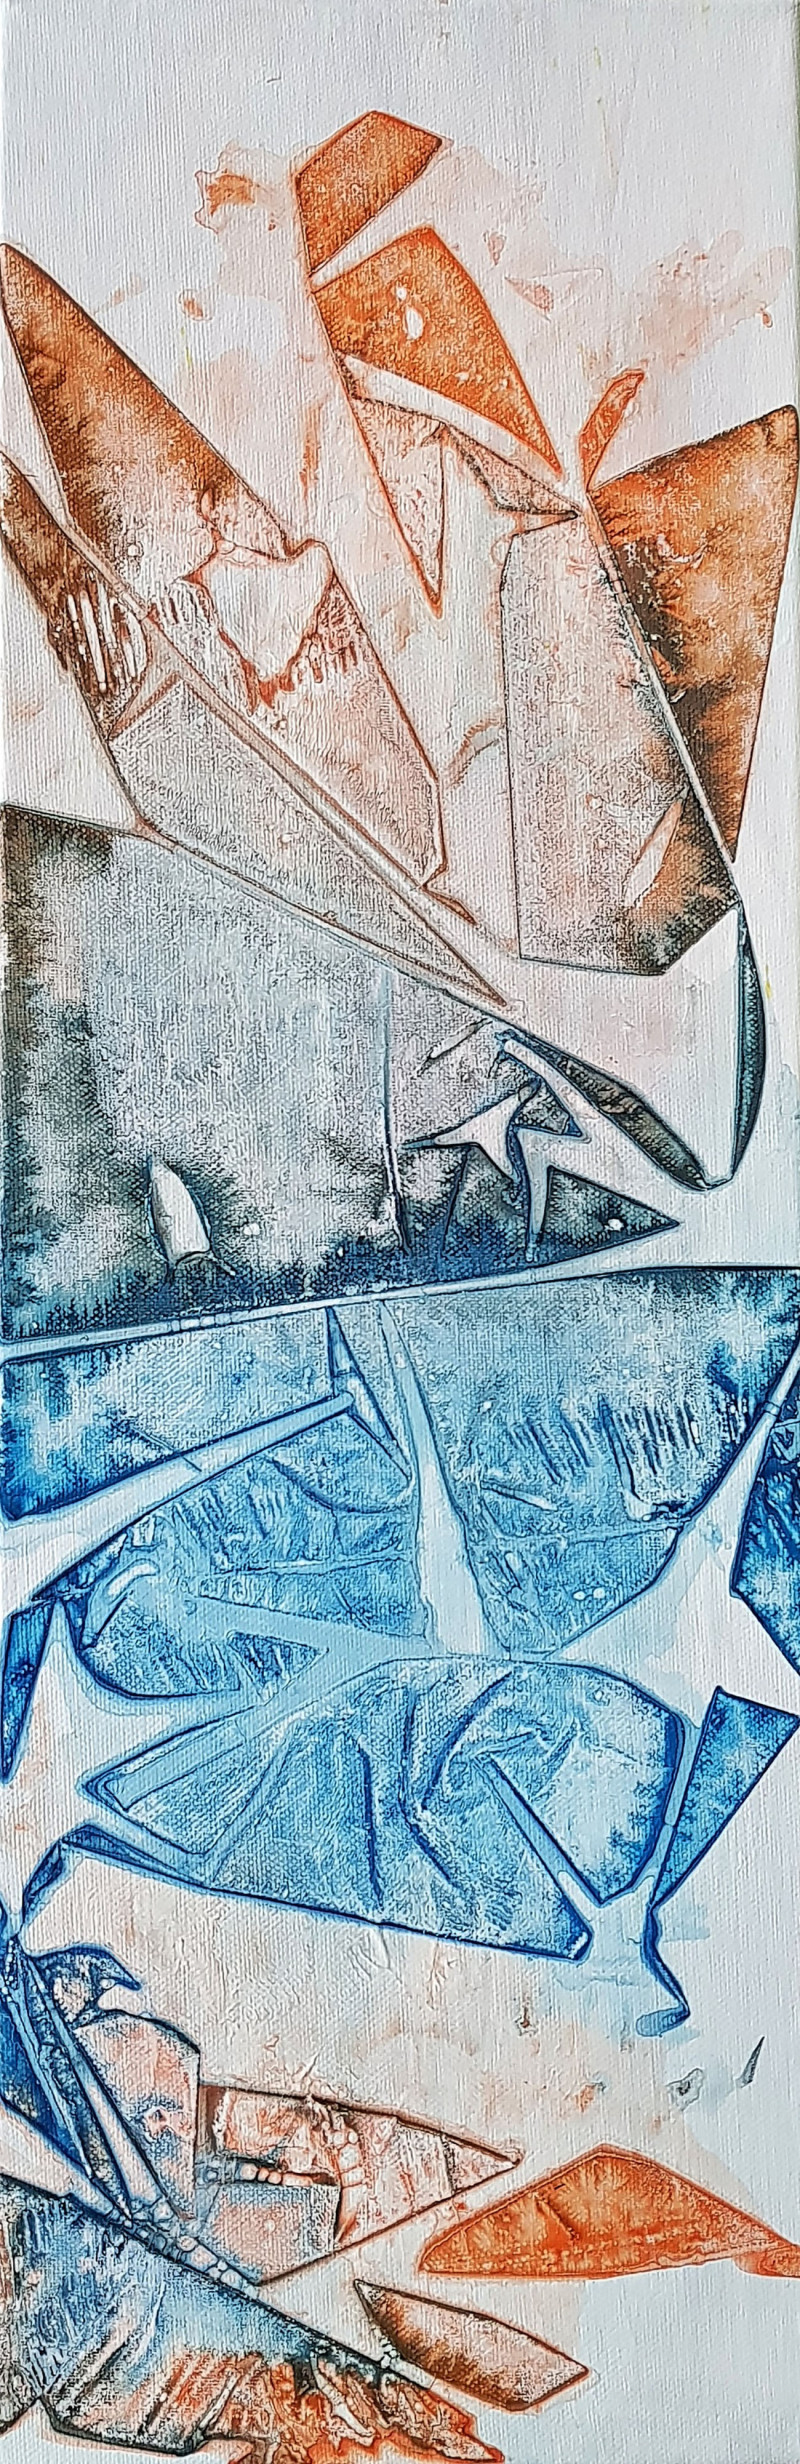 Živilė Dudėnienė tapytas paveikslas Scars of imperfection, Abstrakti tapyba , paveikslai internetu